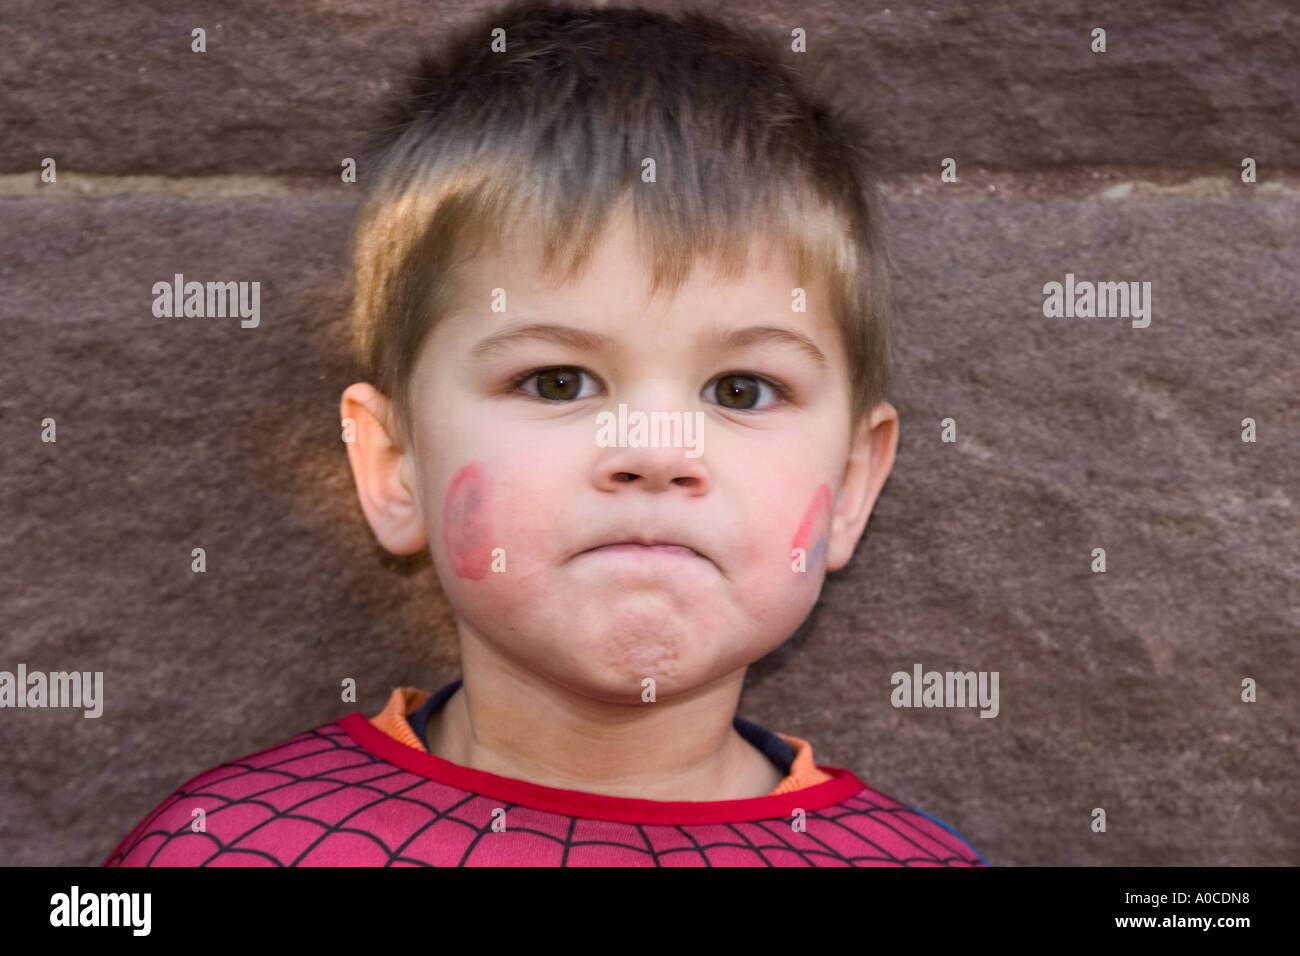 Little Boy in un costume di Spiderman. Foto Stock